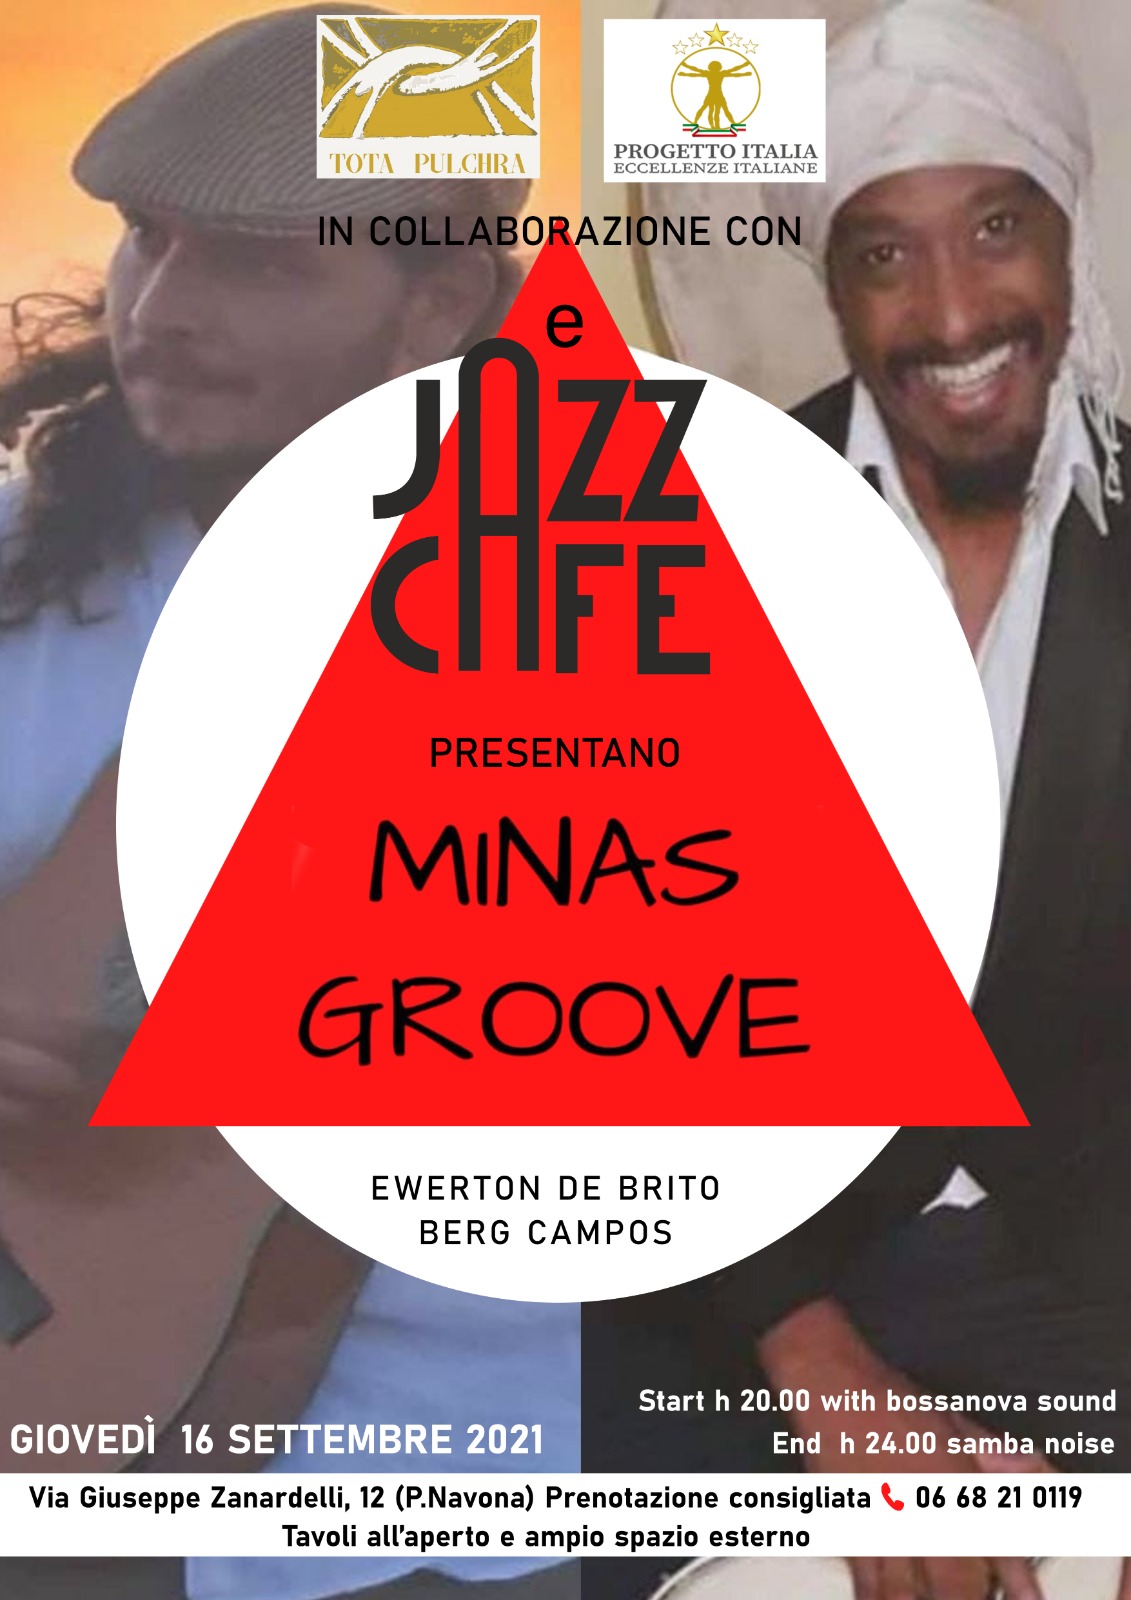 Tota Pulchra e Progetto Italia Eccellenze Italiane in collaborazione con Jazz Cafè presentano Minas Groove